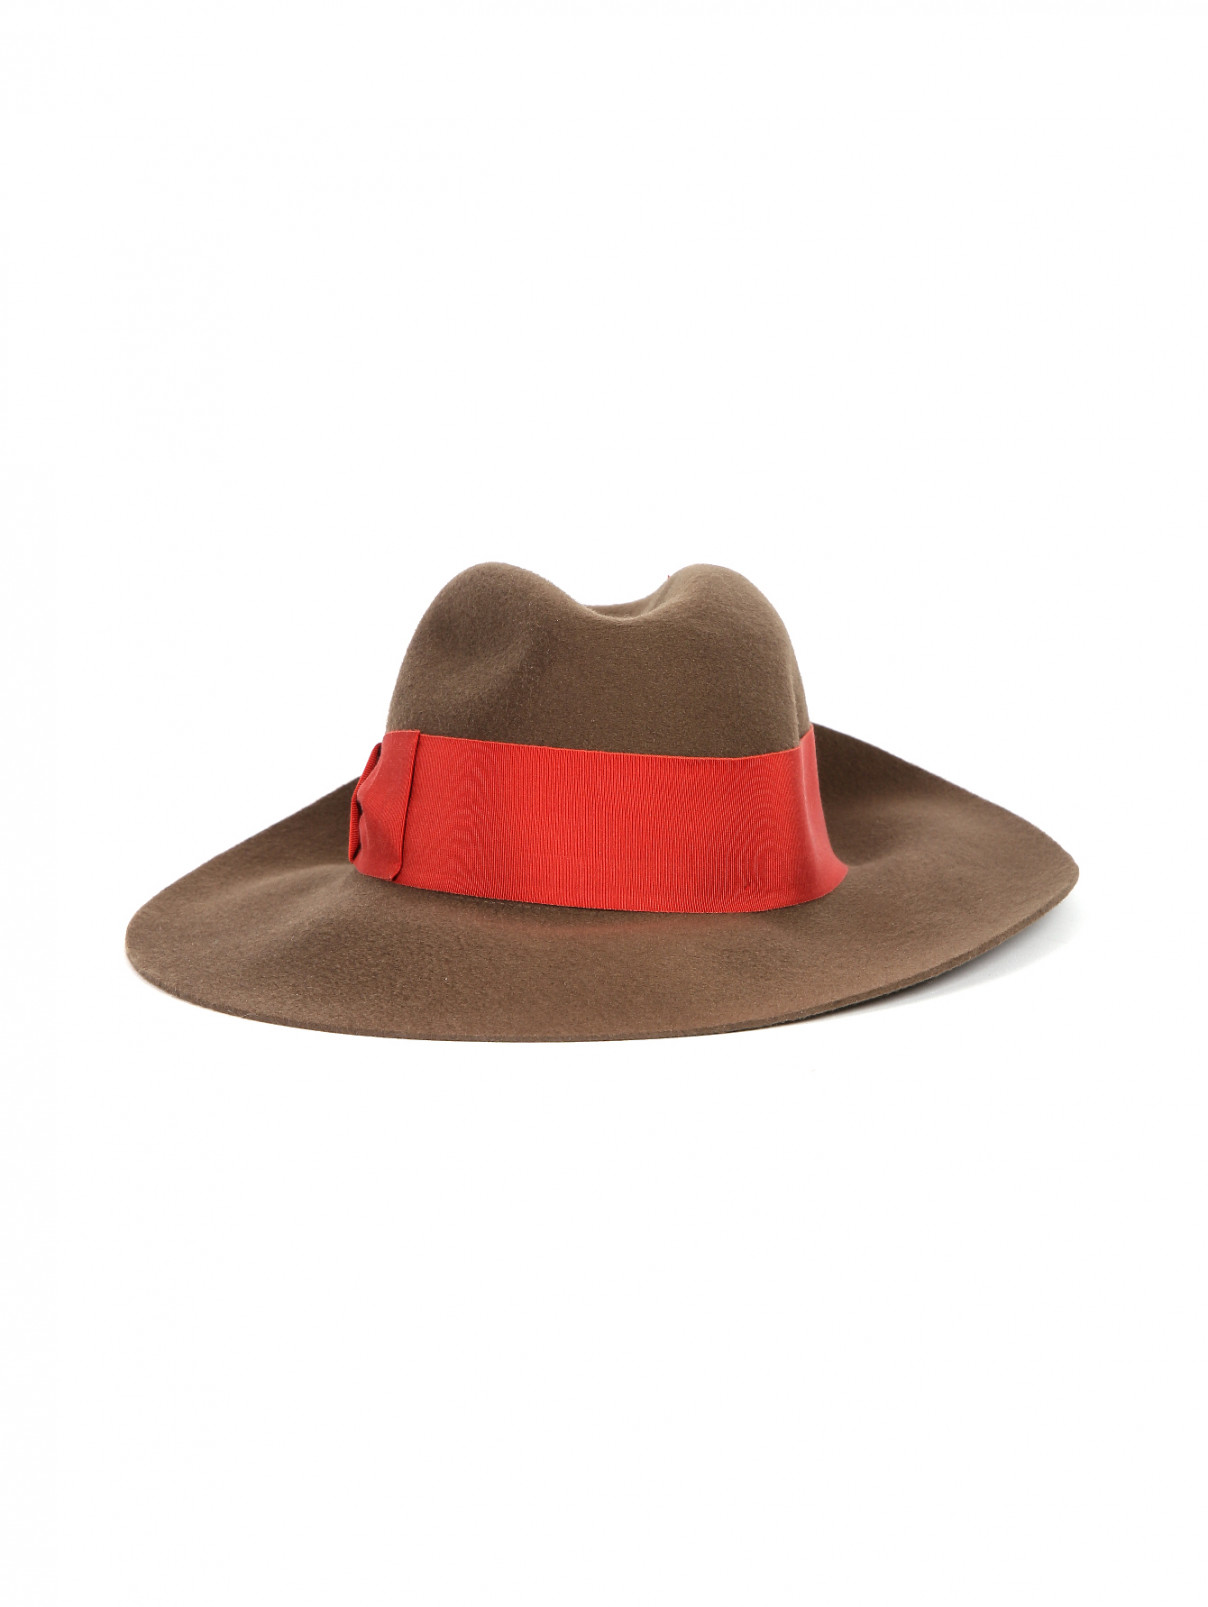 Шляпа шерстяная декорированная репсовой лентой Borsalino  –  Обтравка1  – Цвет:  Коричневый